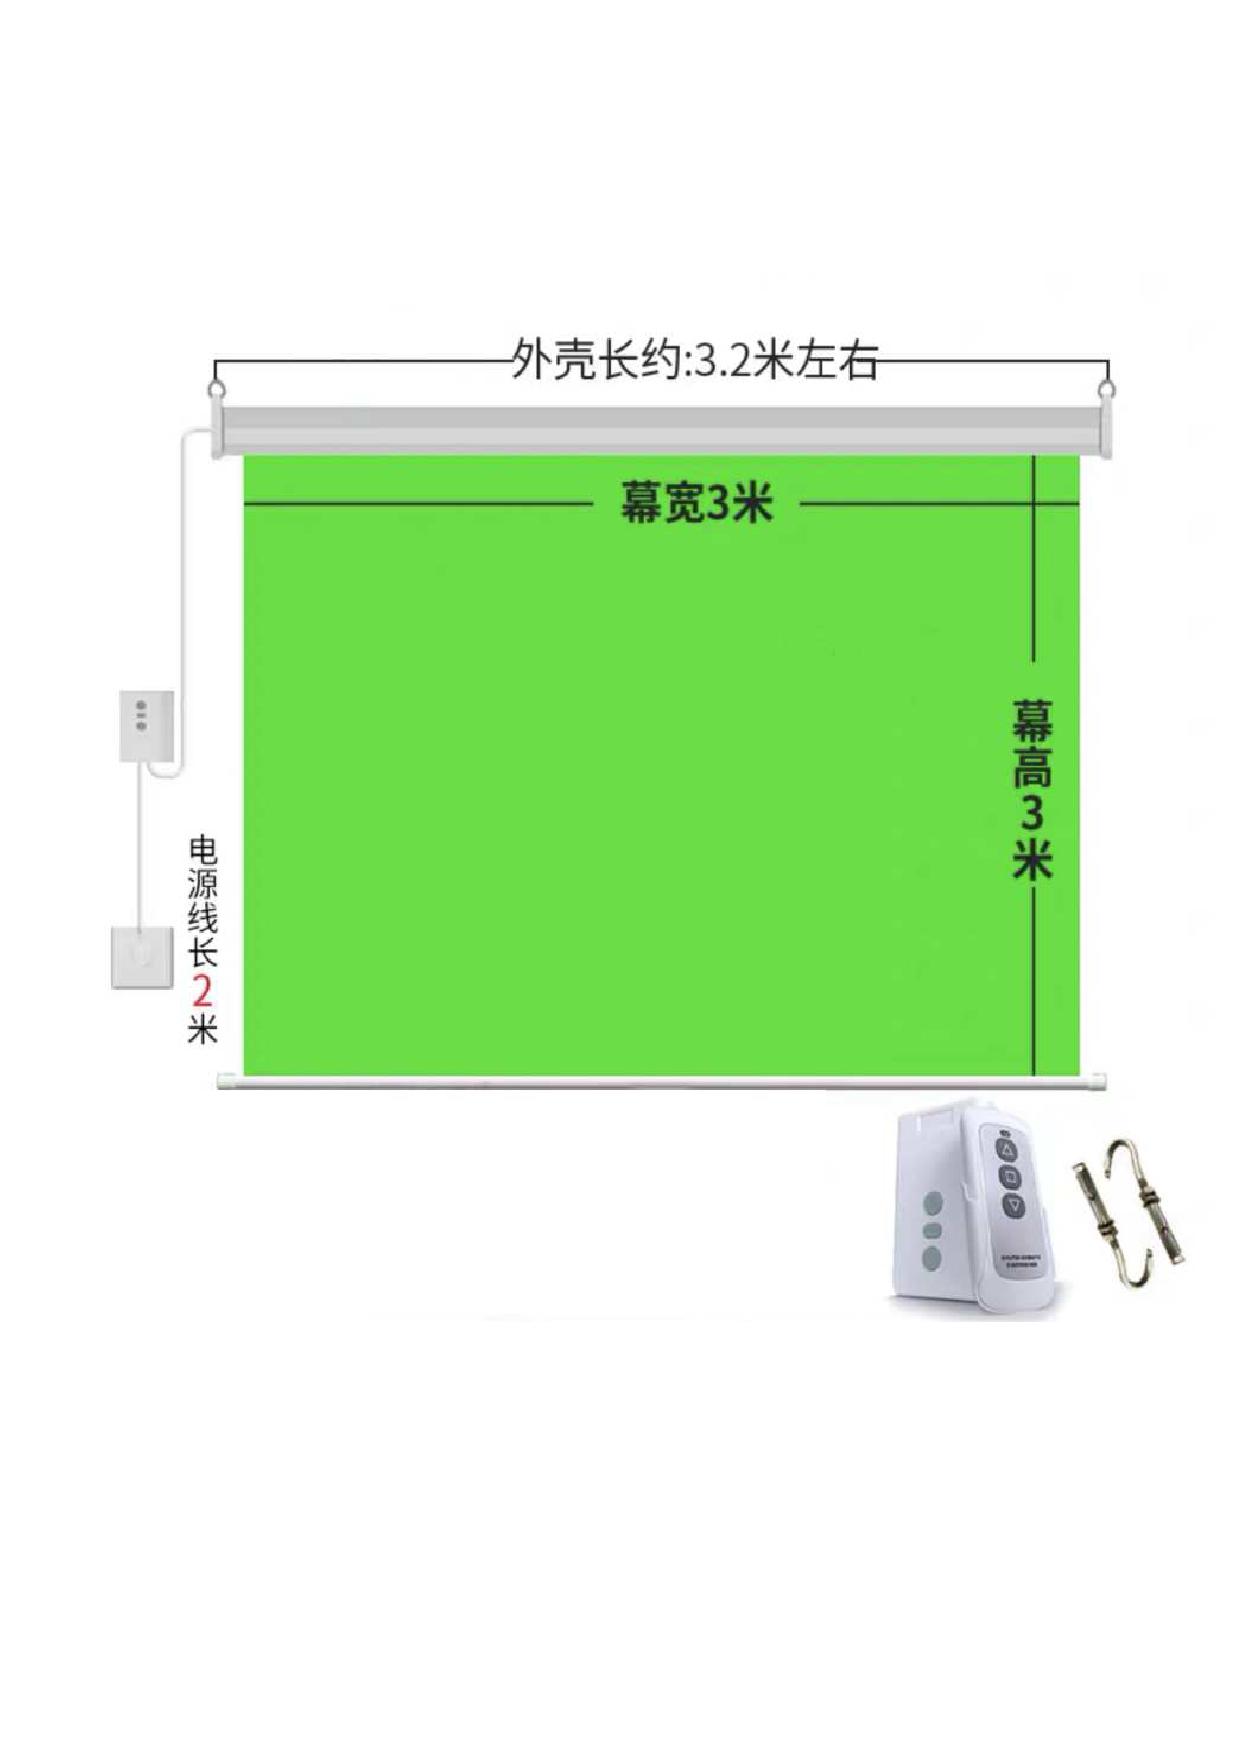 מסך ירוק נגלל חשמלי כולל שלט אלחוטי